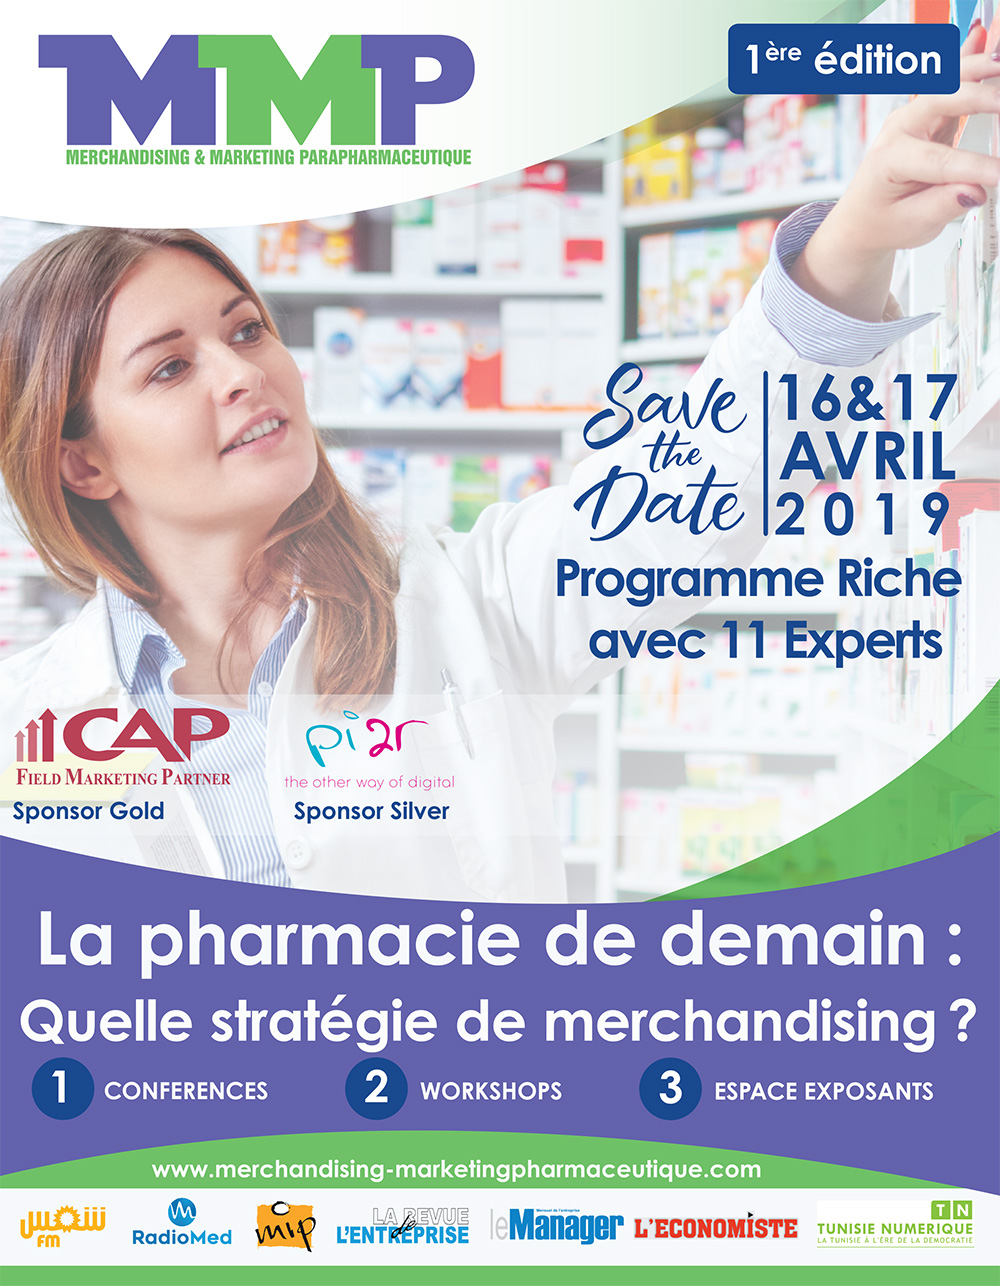 Tunisie- Première édition des Journées Internationales de Merchandising pharmaceutique “MMP”